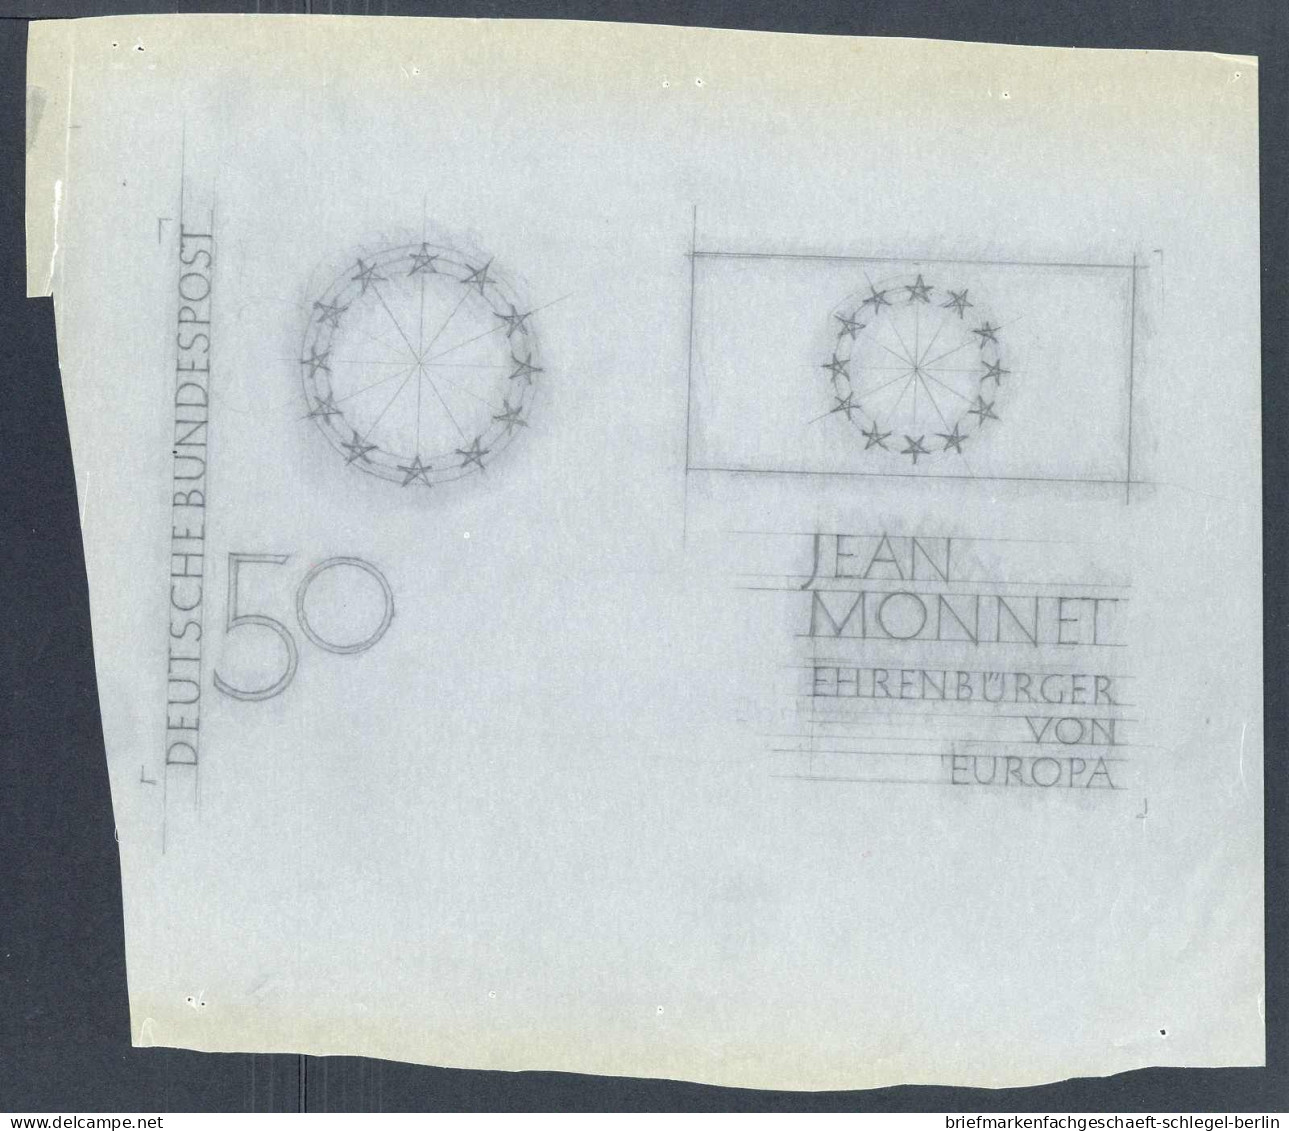 Bundesrepublik Deutschland, 1977, 926 Entwurf, postfrisch